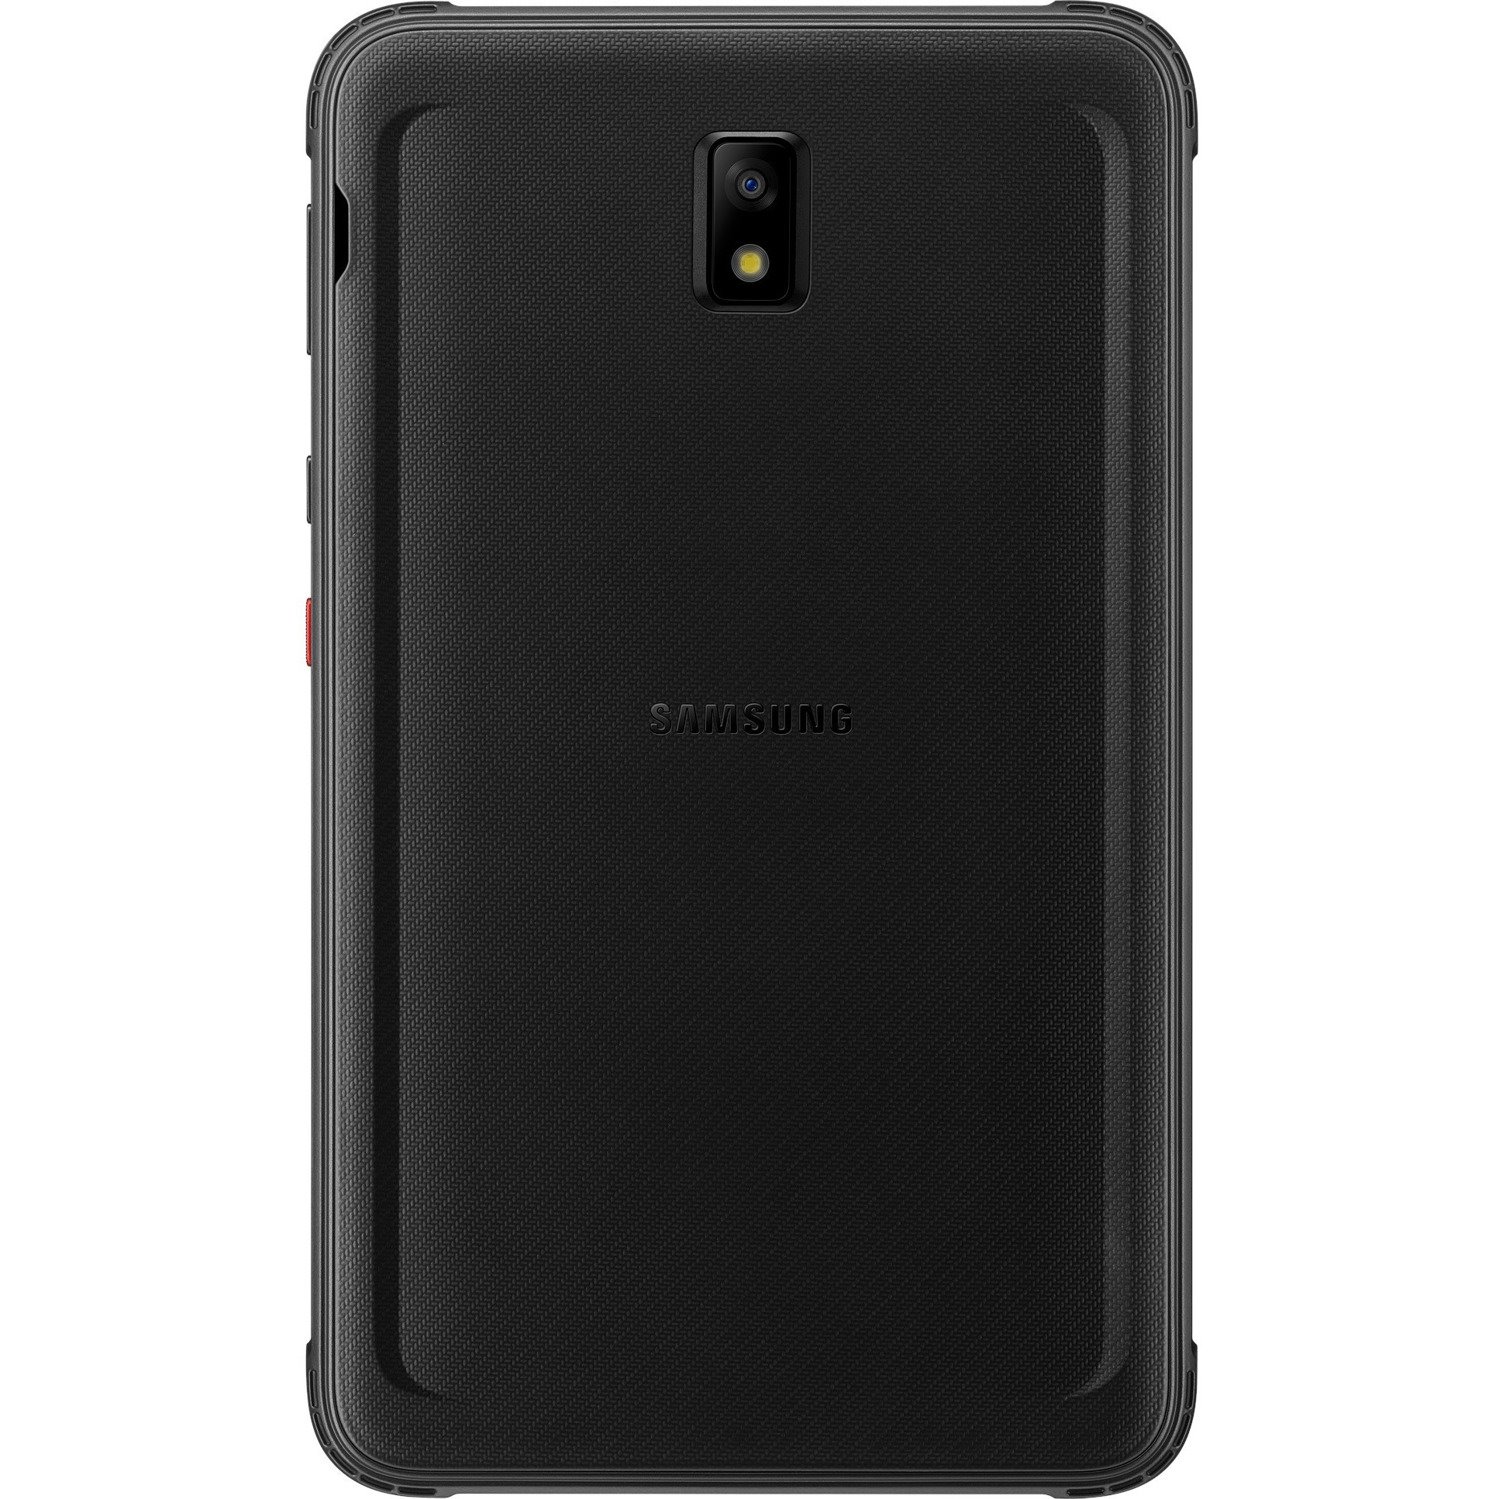 Samsung Galaxy Tab Active3 SM-T570 Rugged Tablet - 8" WUXGA - Samsung Exynos 9810 - 4 GB - 128 GB Storage - Black